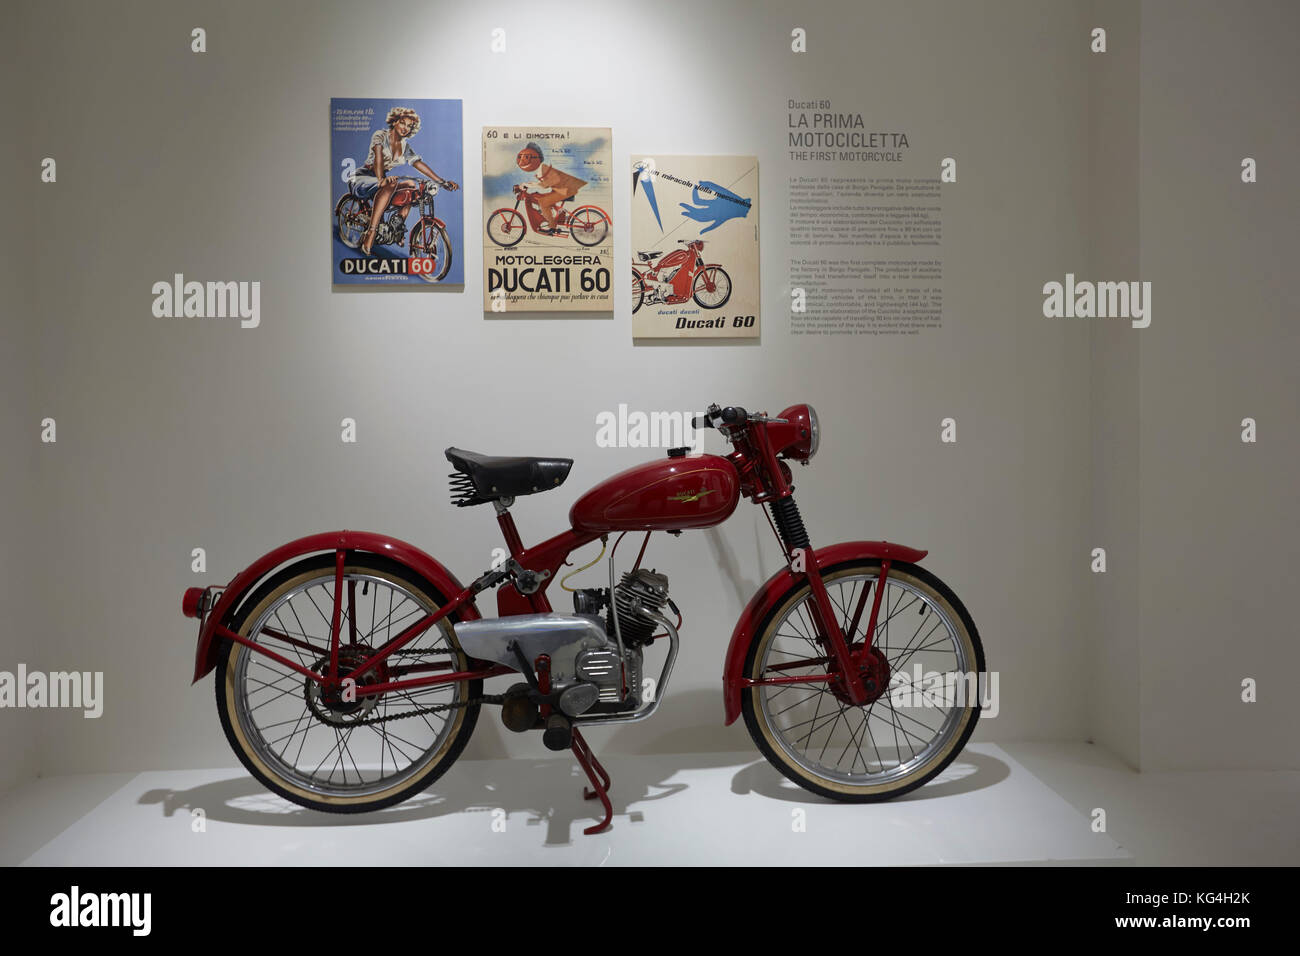 Ducati 60 La Prima Motocicletta la première moto faite par l'usine de Borga Panigale sur l'affichage à l'usine Ducati museum, Bologne, Italie. Banque D'Images